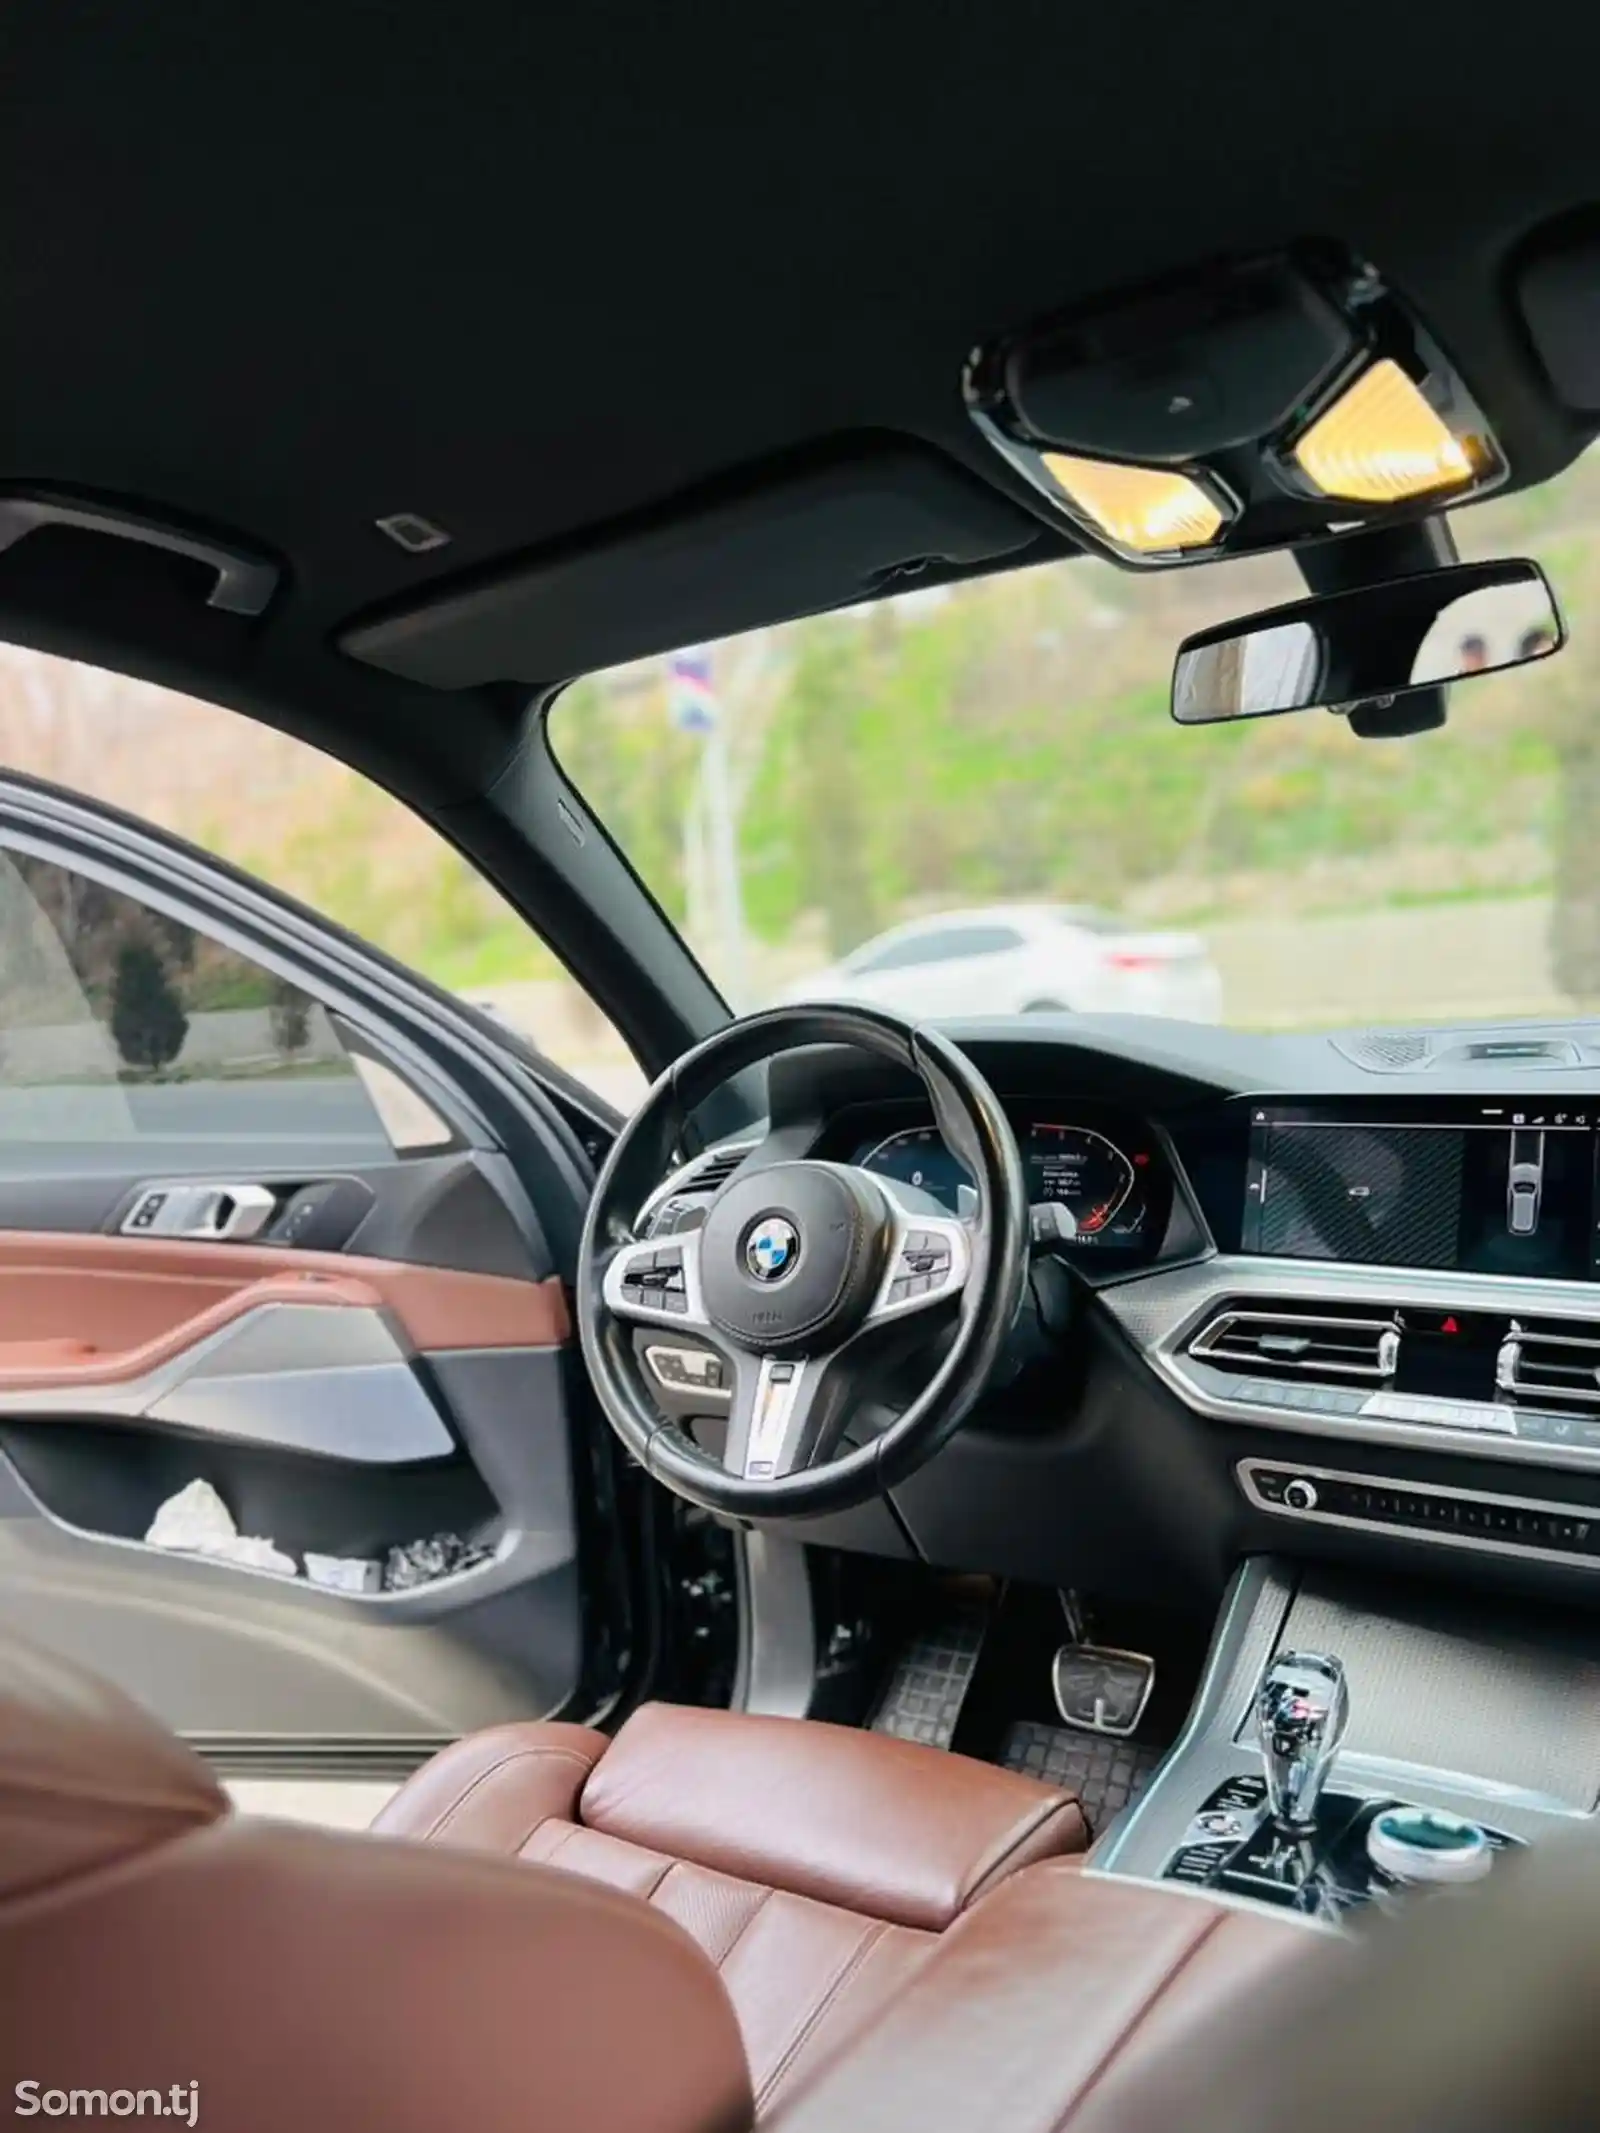 BMW X5, 2020-2